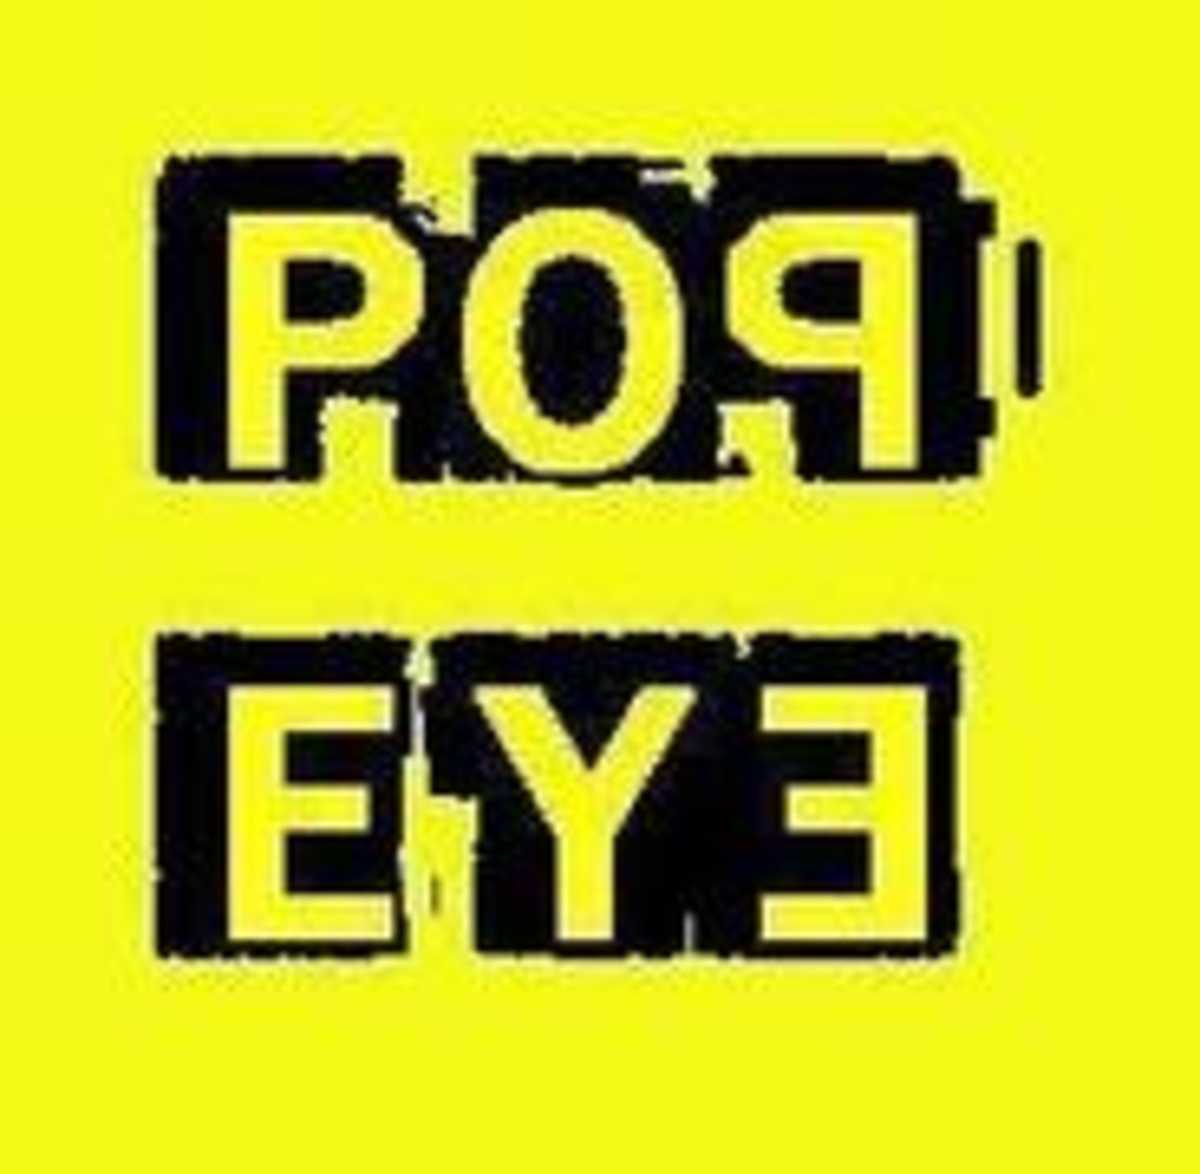 Pop Eye